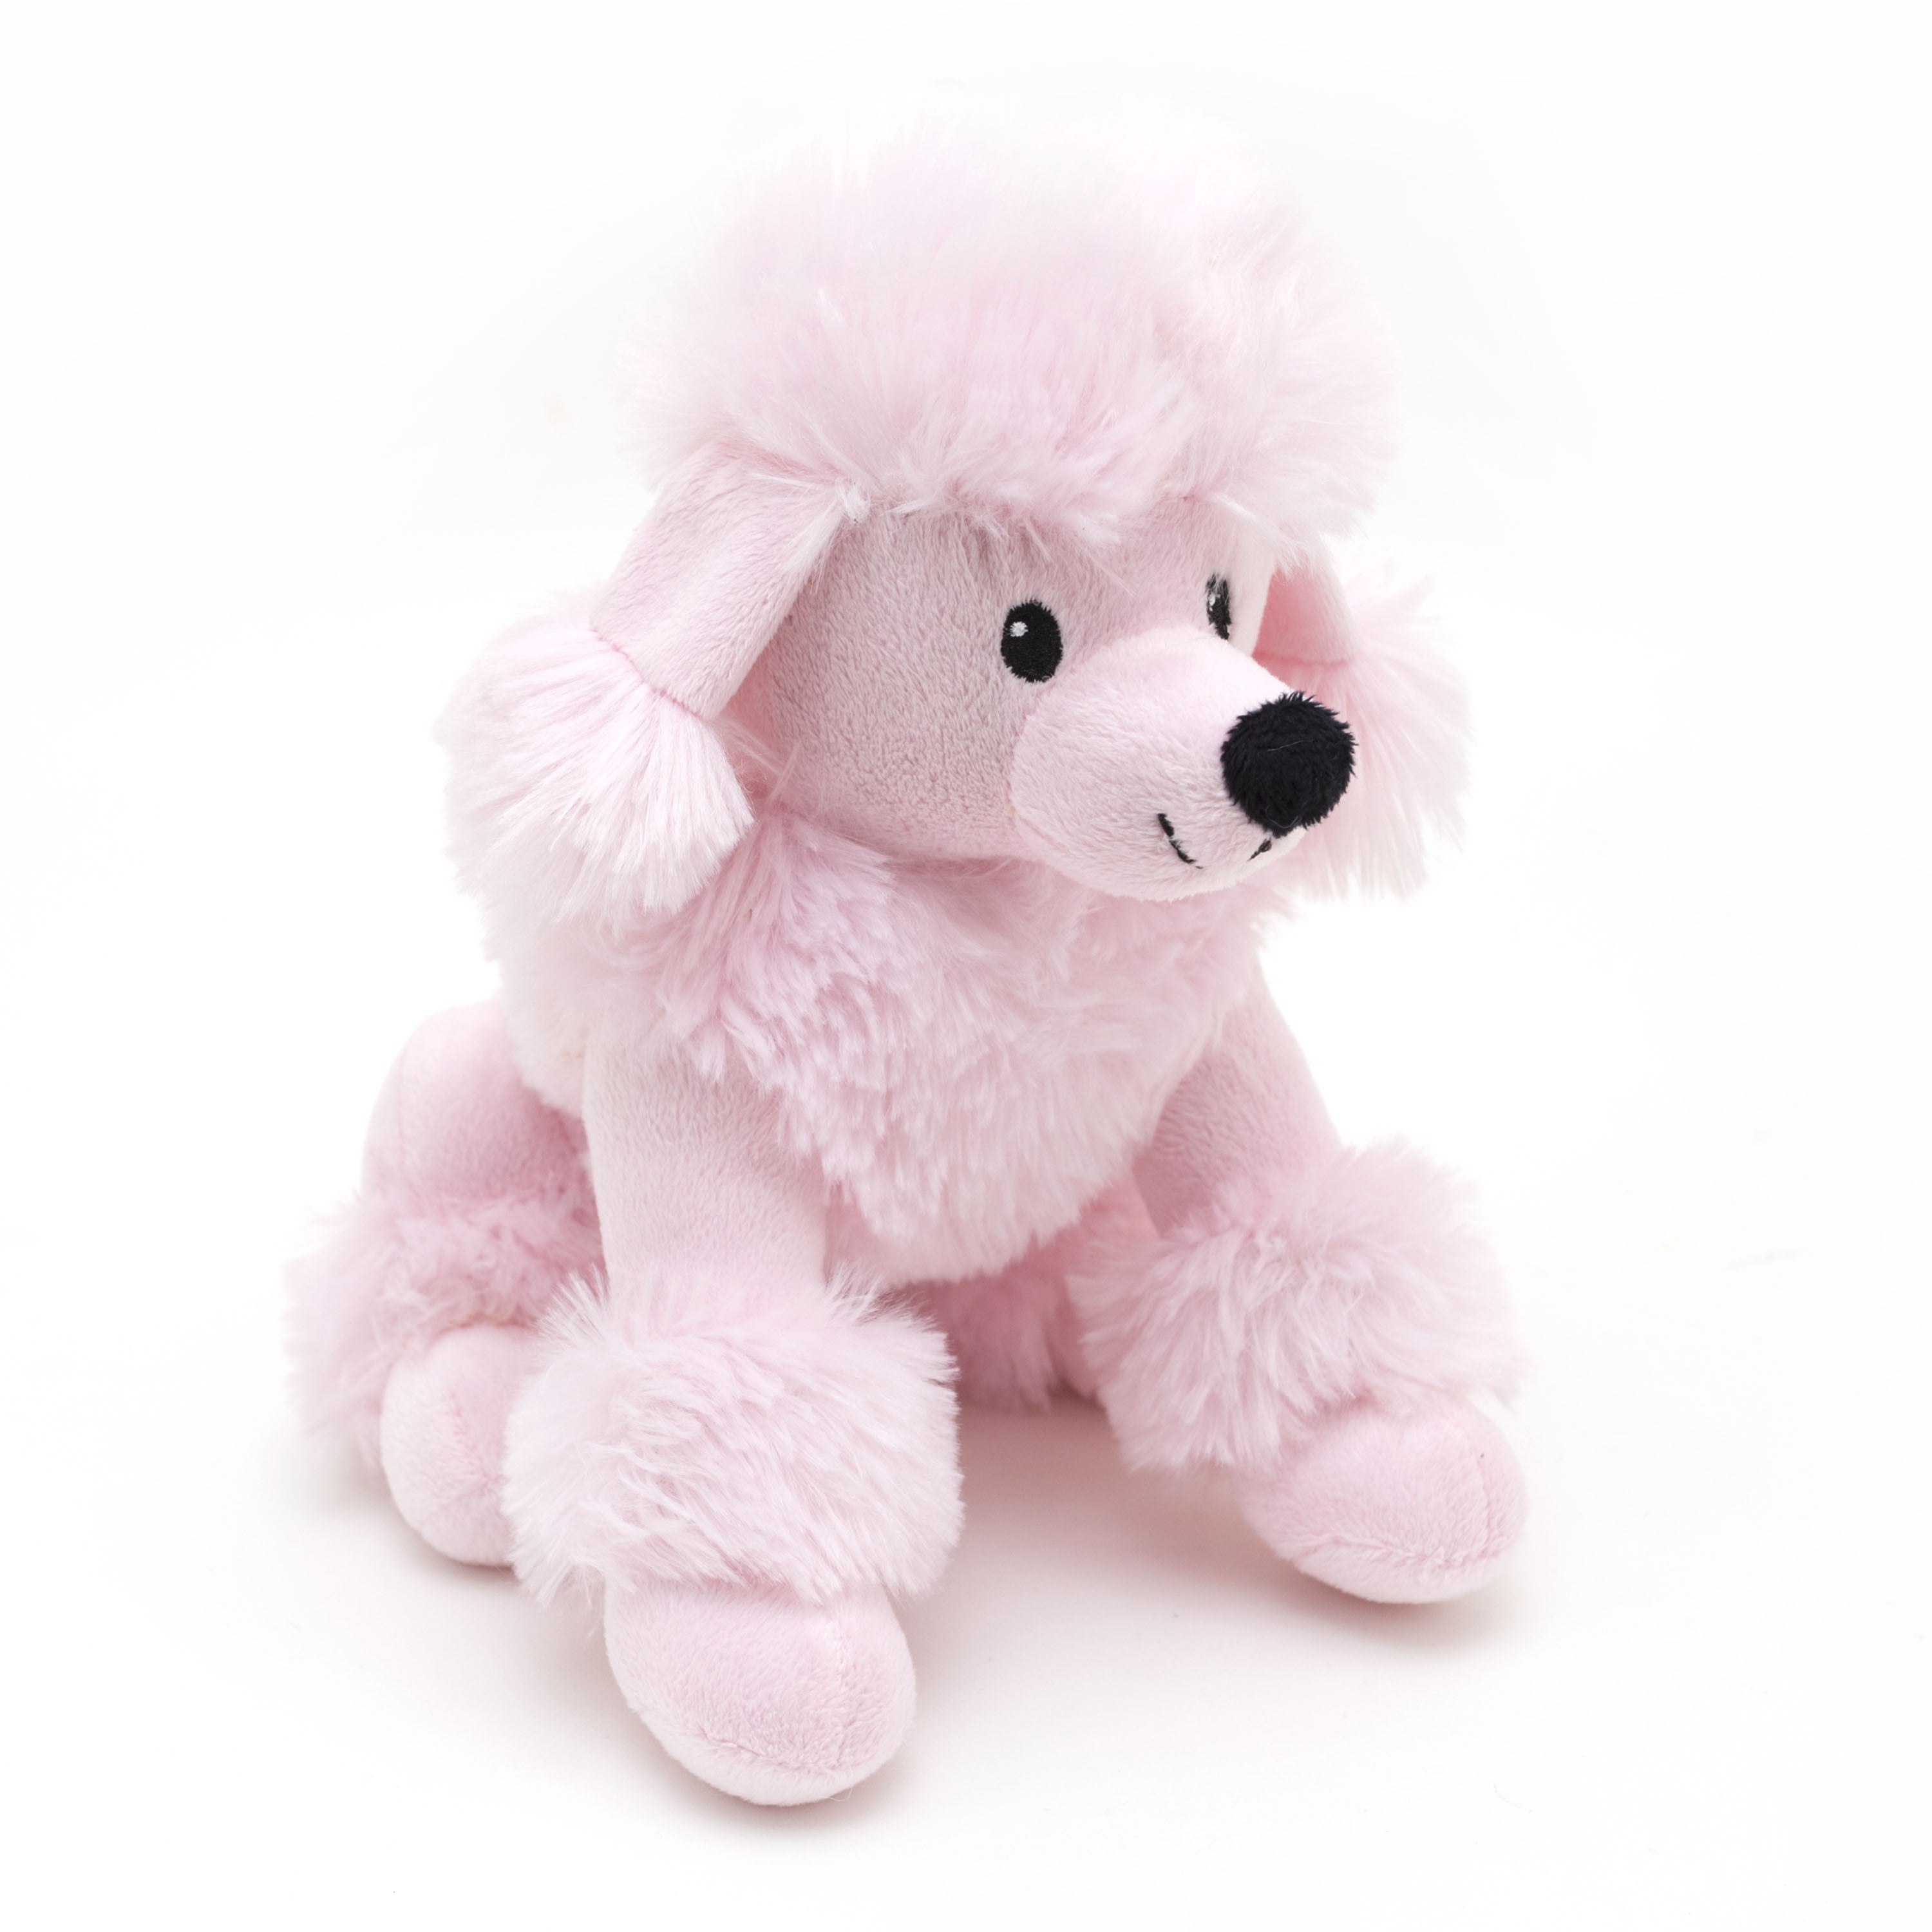 standard poodle stuffed animal